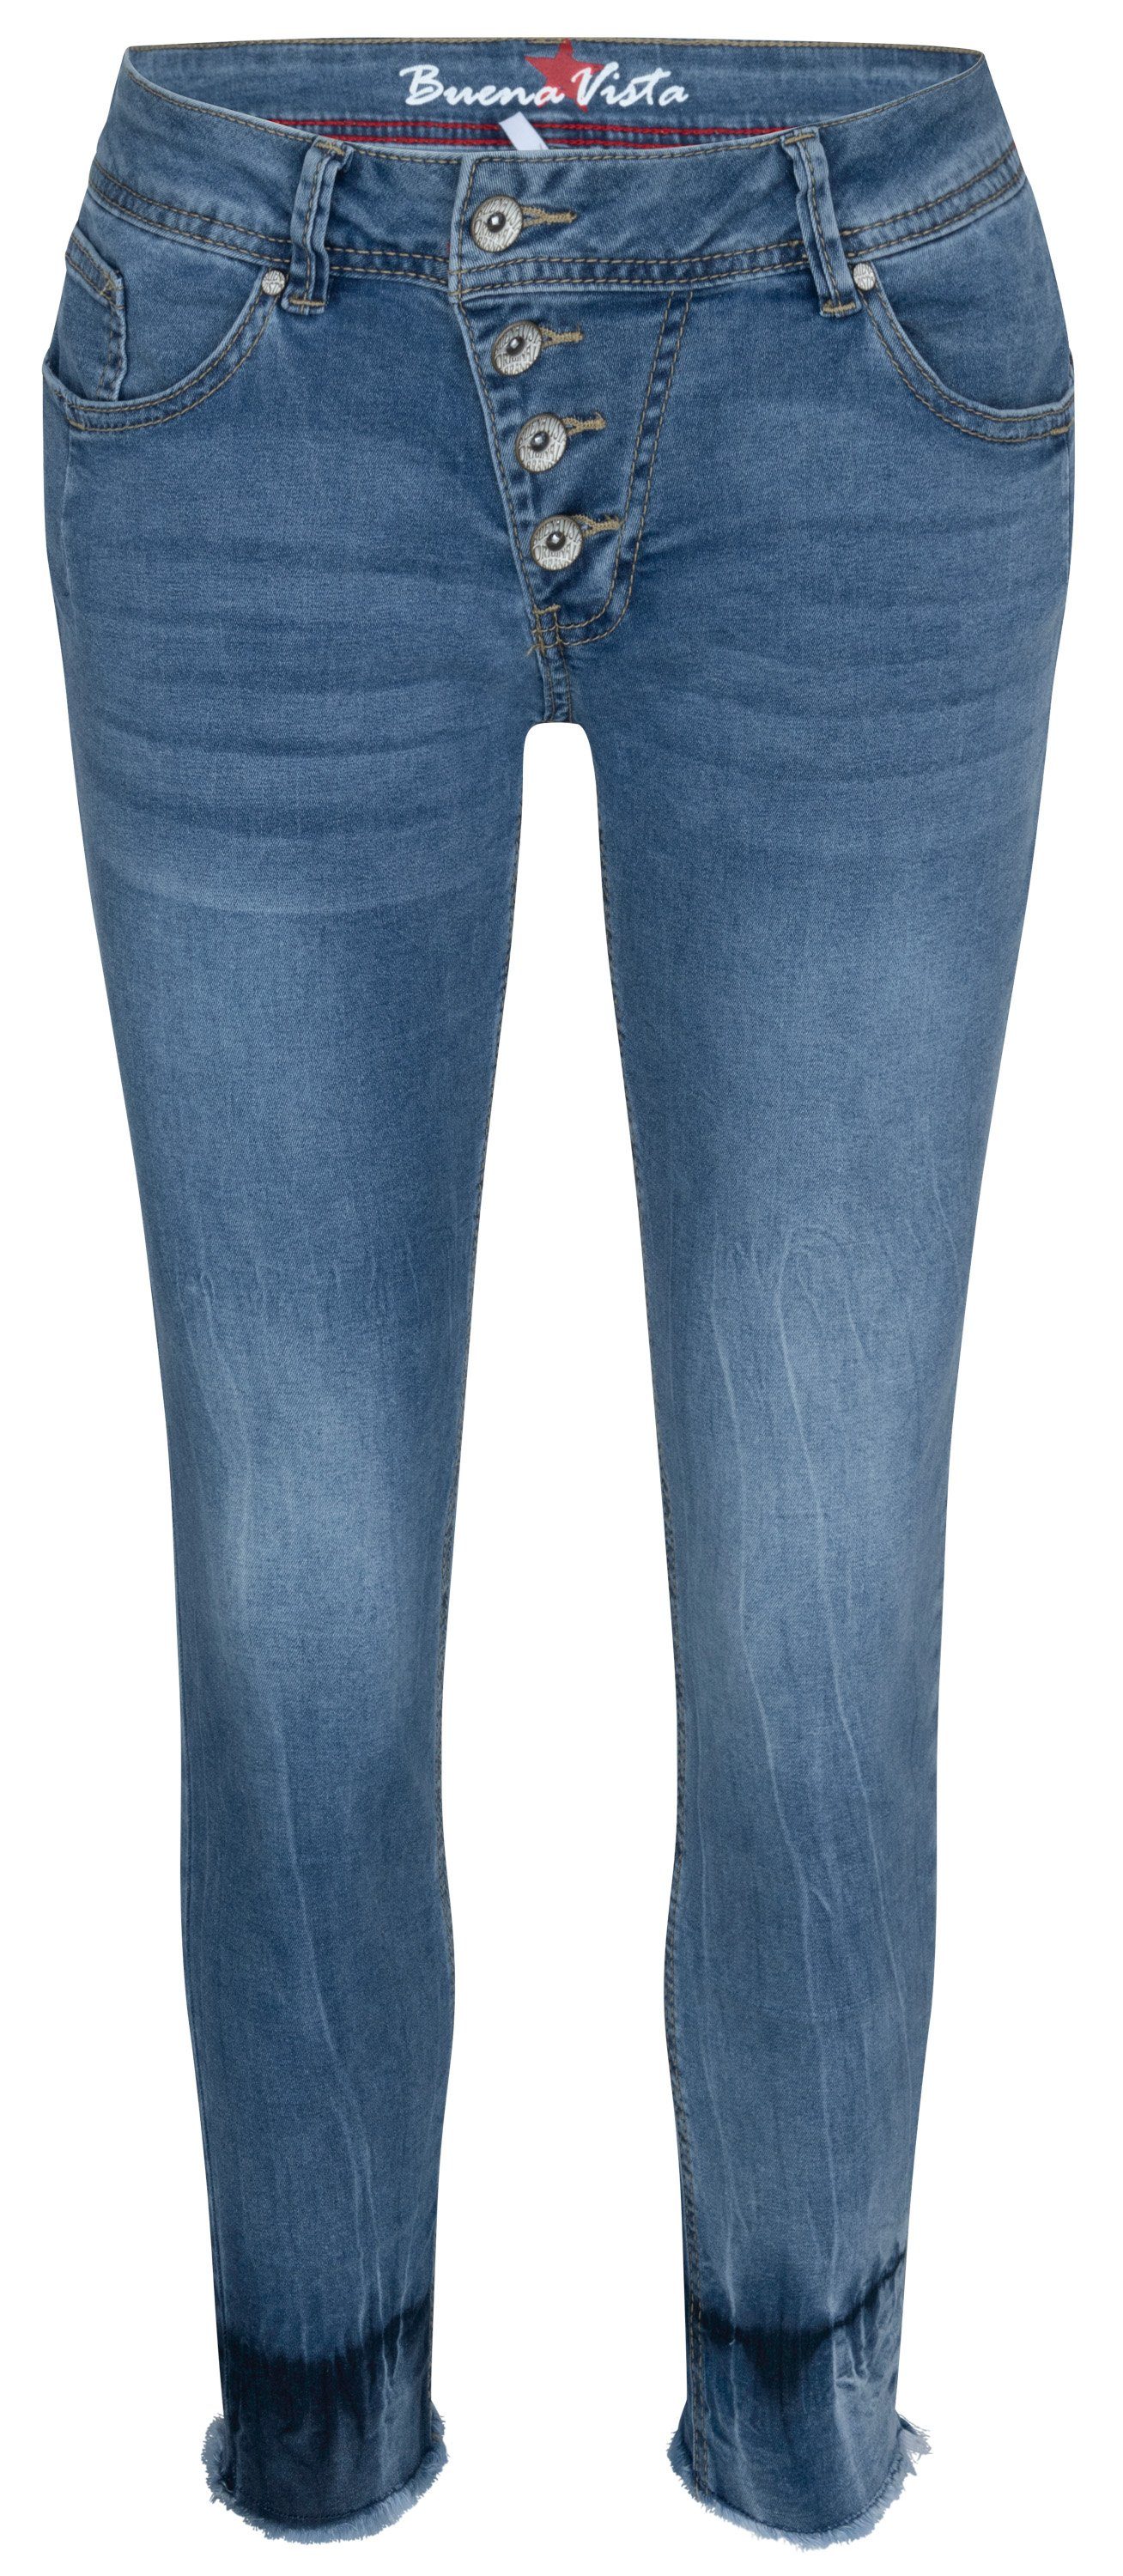 Buena Vista Stretch-Jeans BUENA VISTA MALIBU 7/8 dipped blue 2304 B5122 102 H.8197 - Cozy Denim